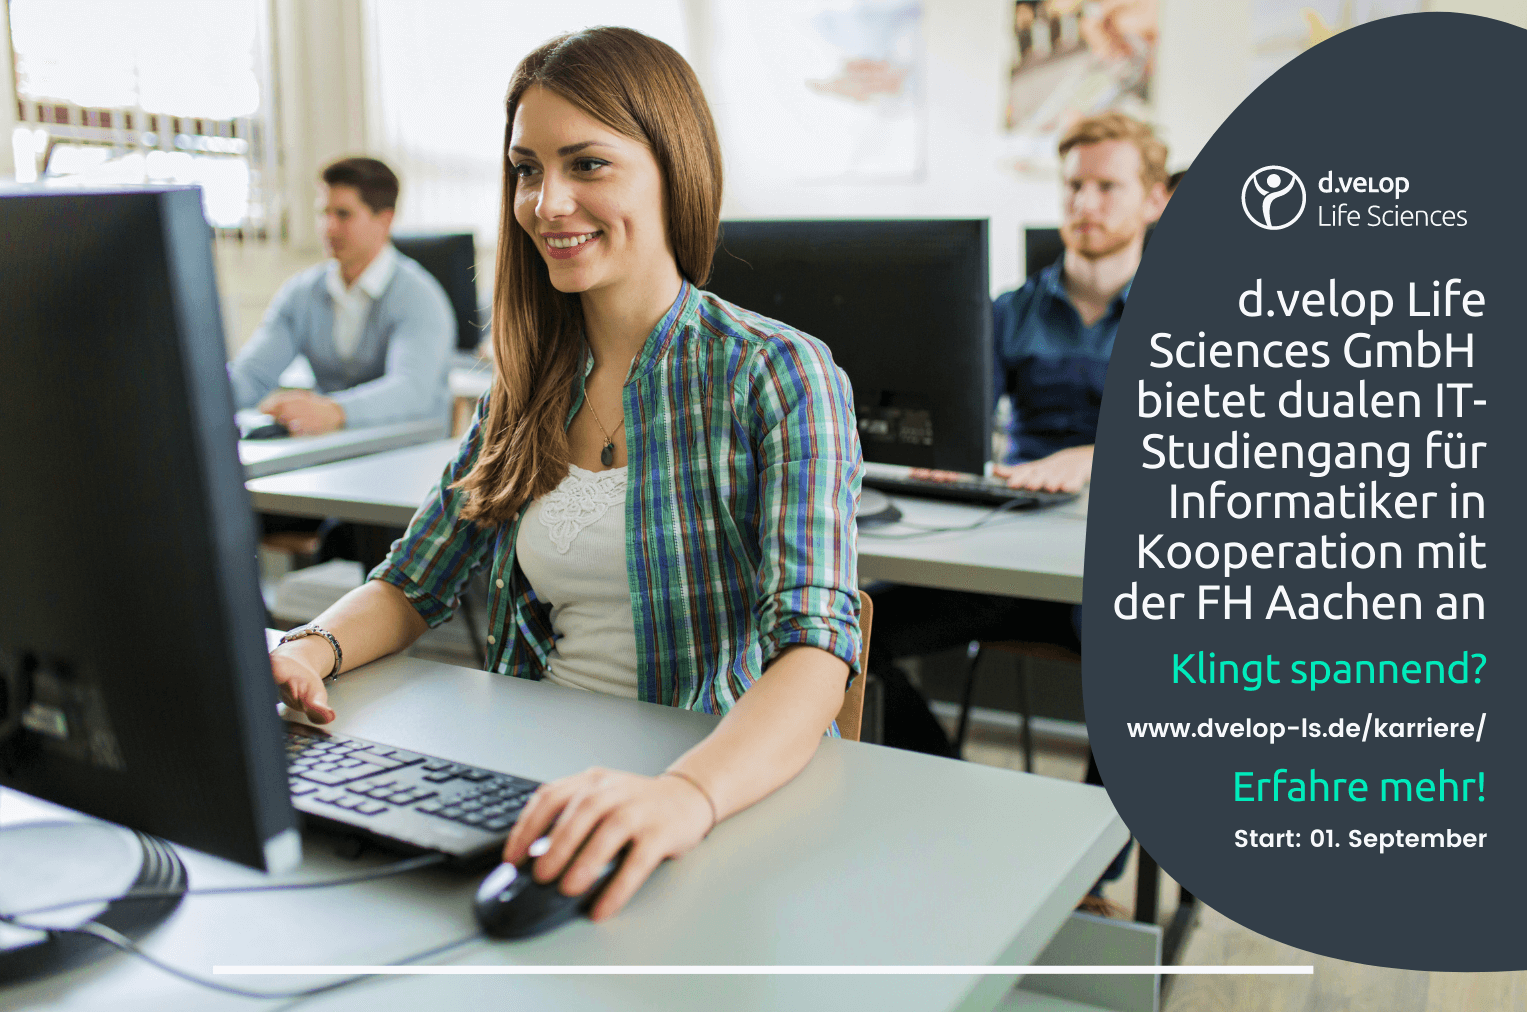 Digital Life Sciences GmbH bietet dualen IT-Studiengang für Informatiker in Kooperation mit der FH Aachen an